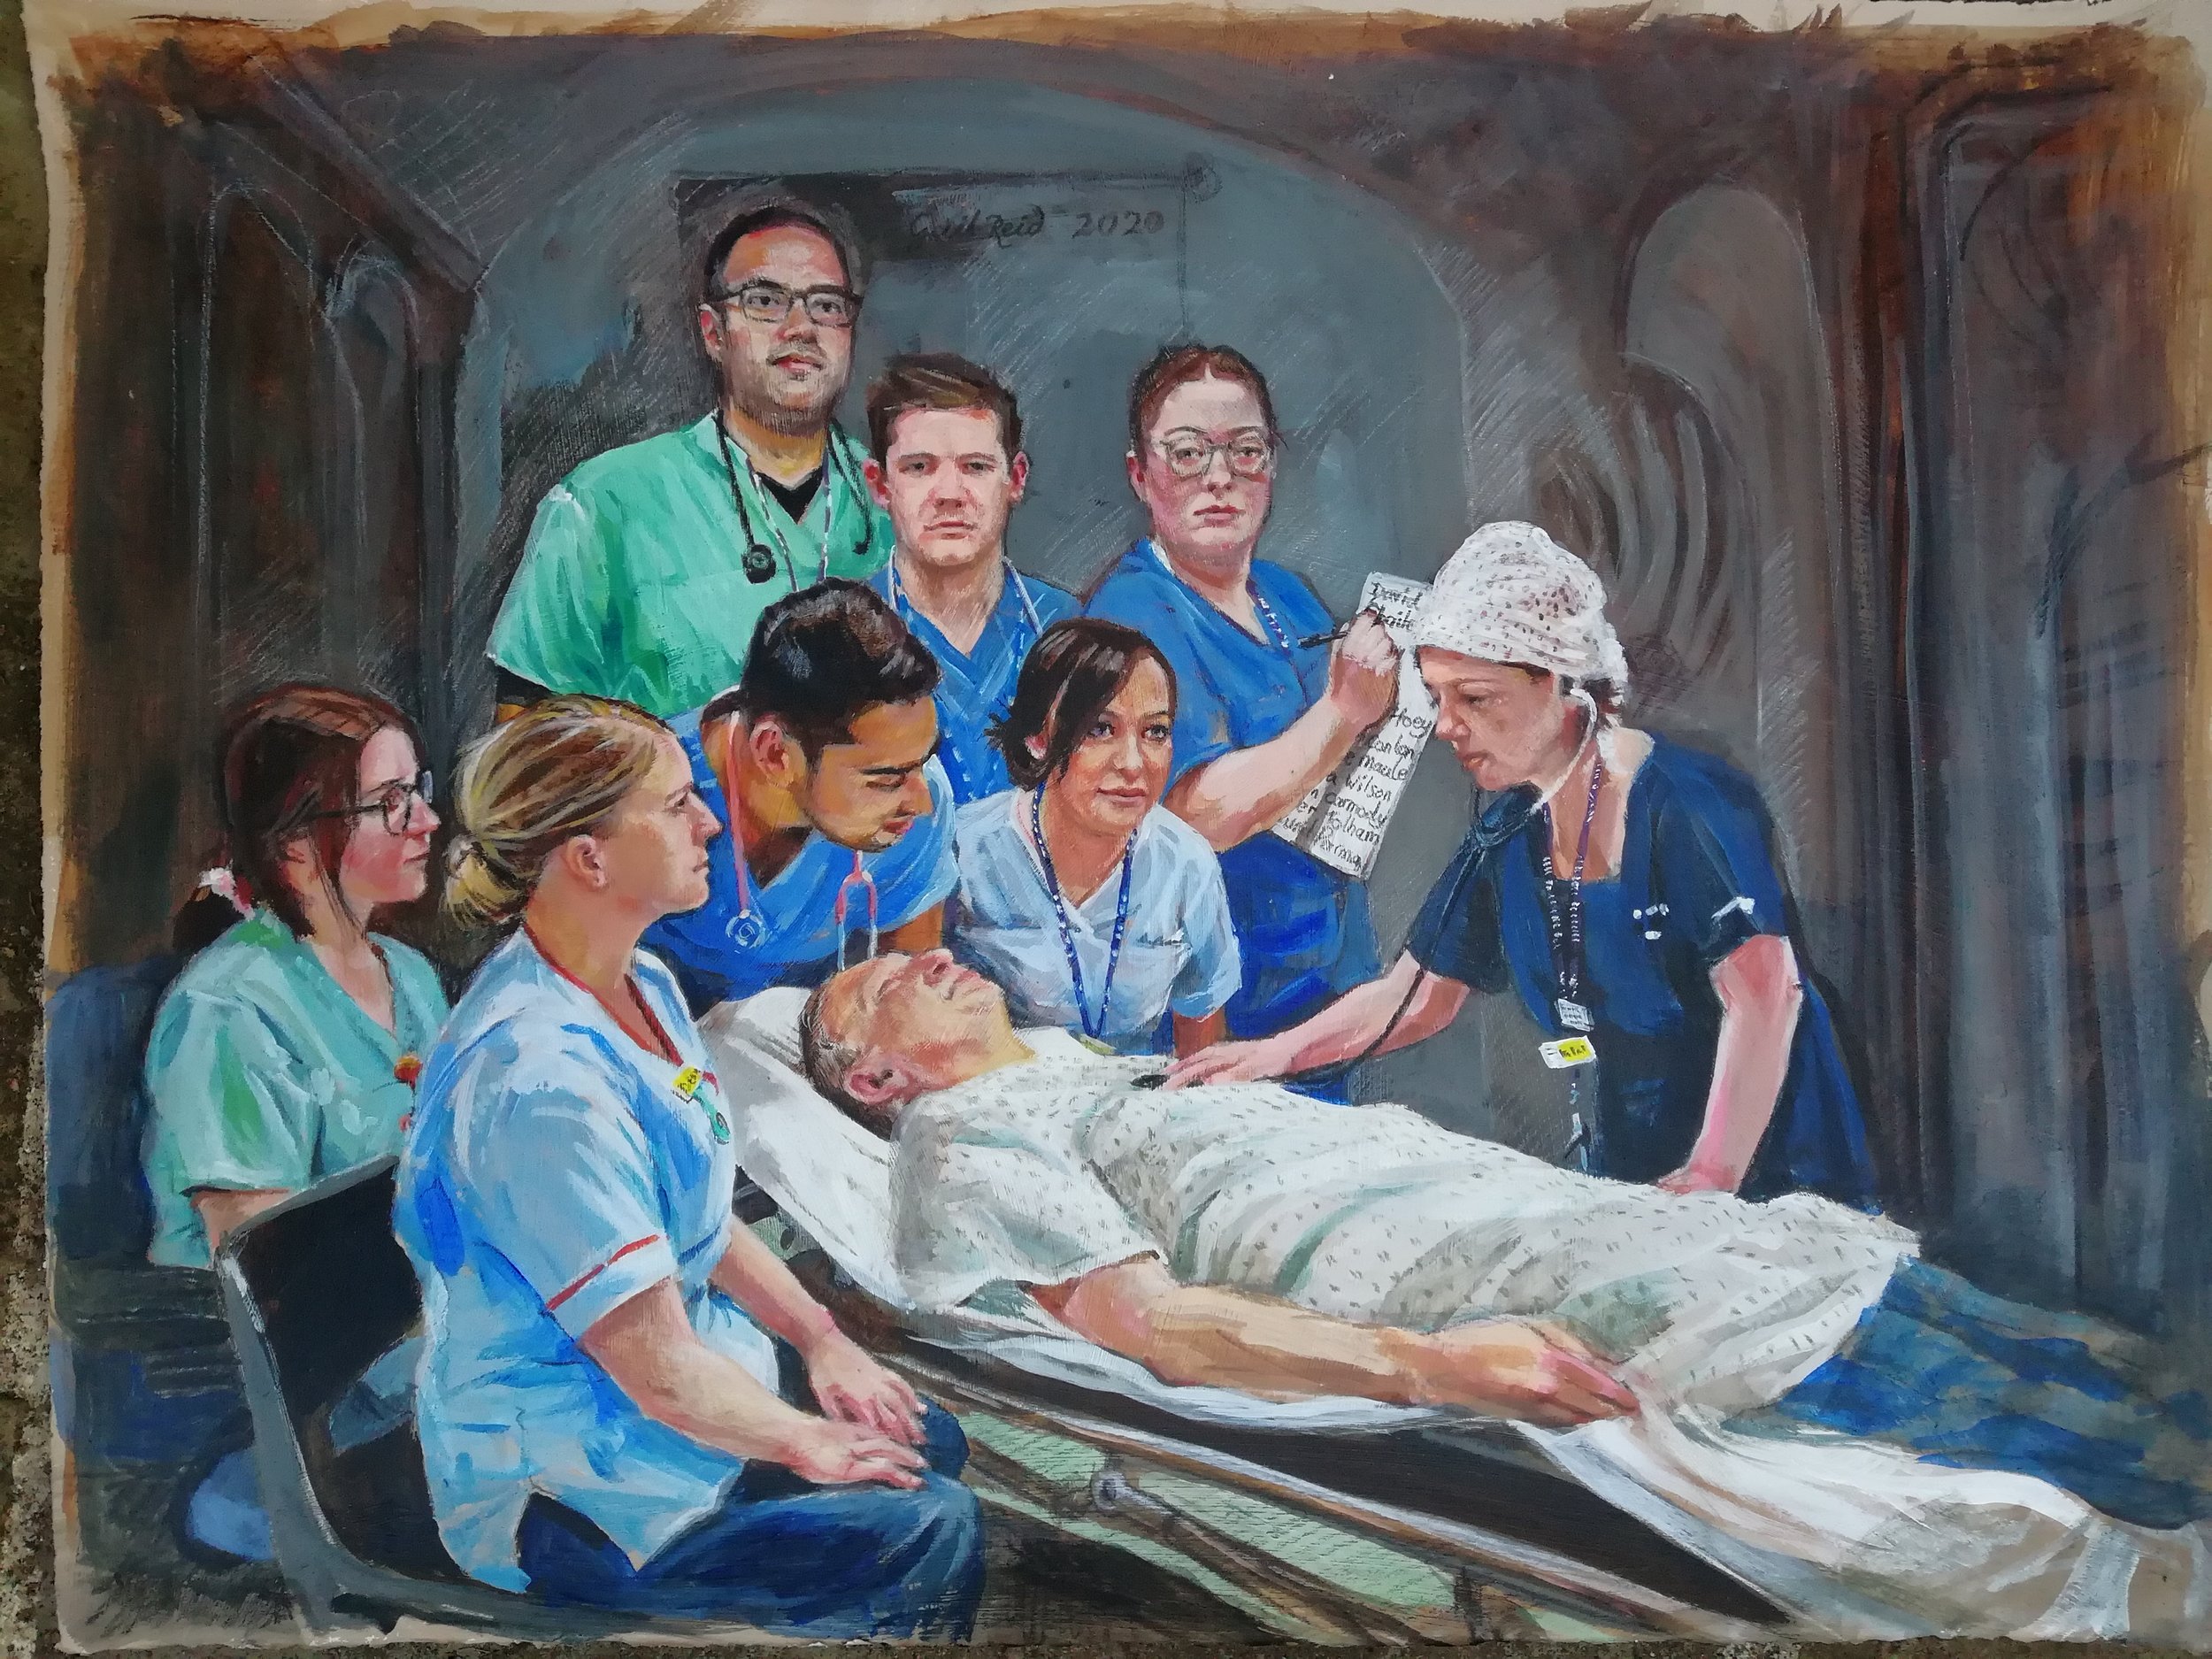 Portrait of NHS heroes